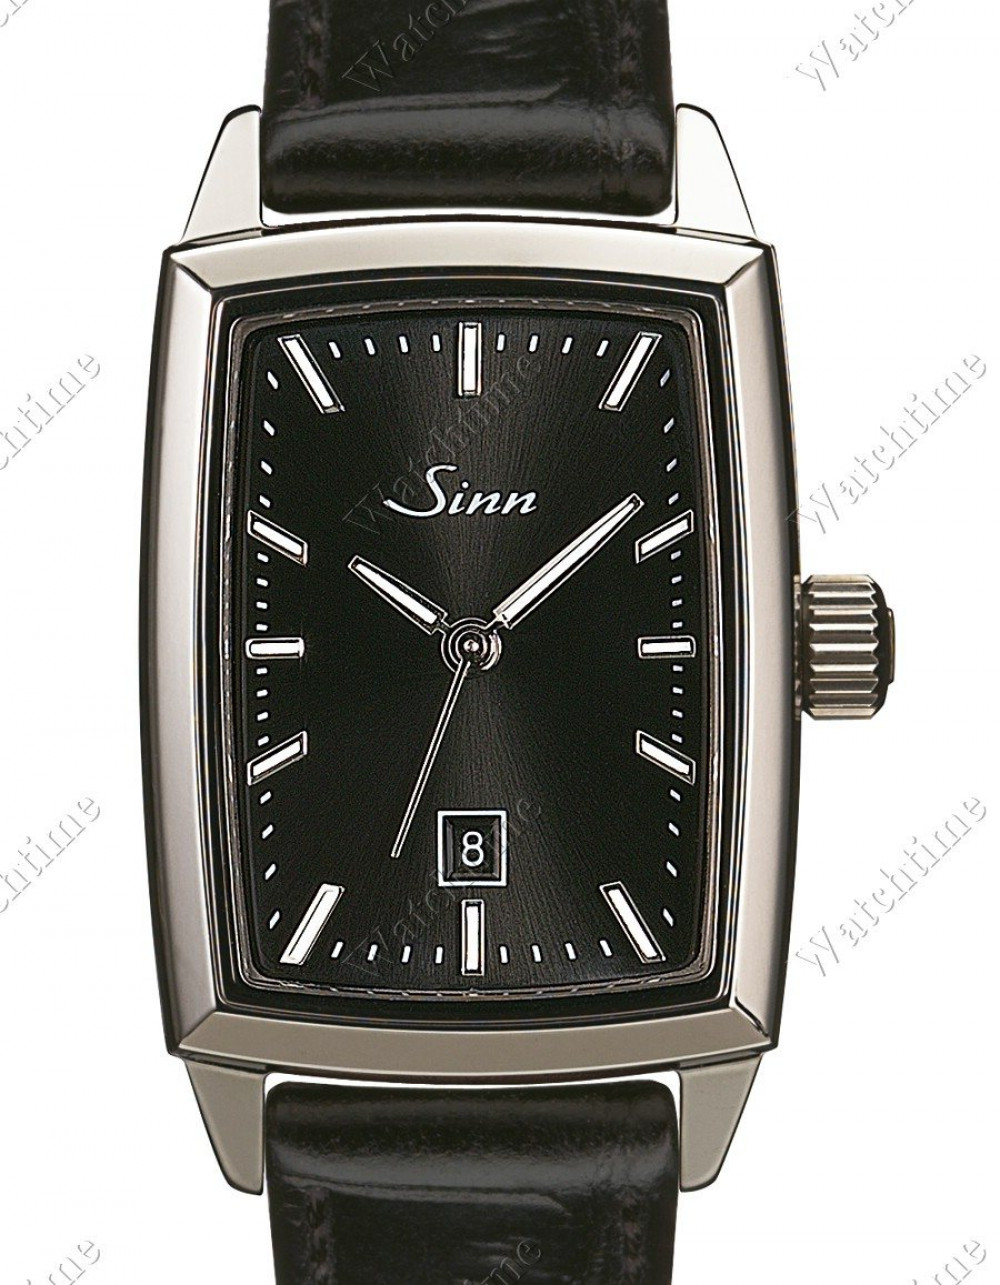 Zegarek firmy Sinn, model 243 Ti S